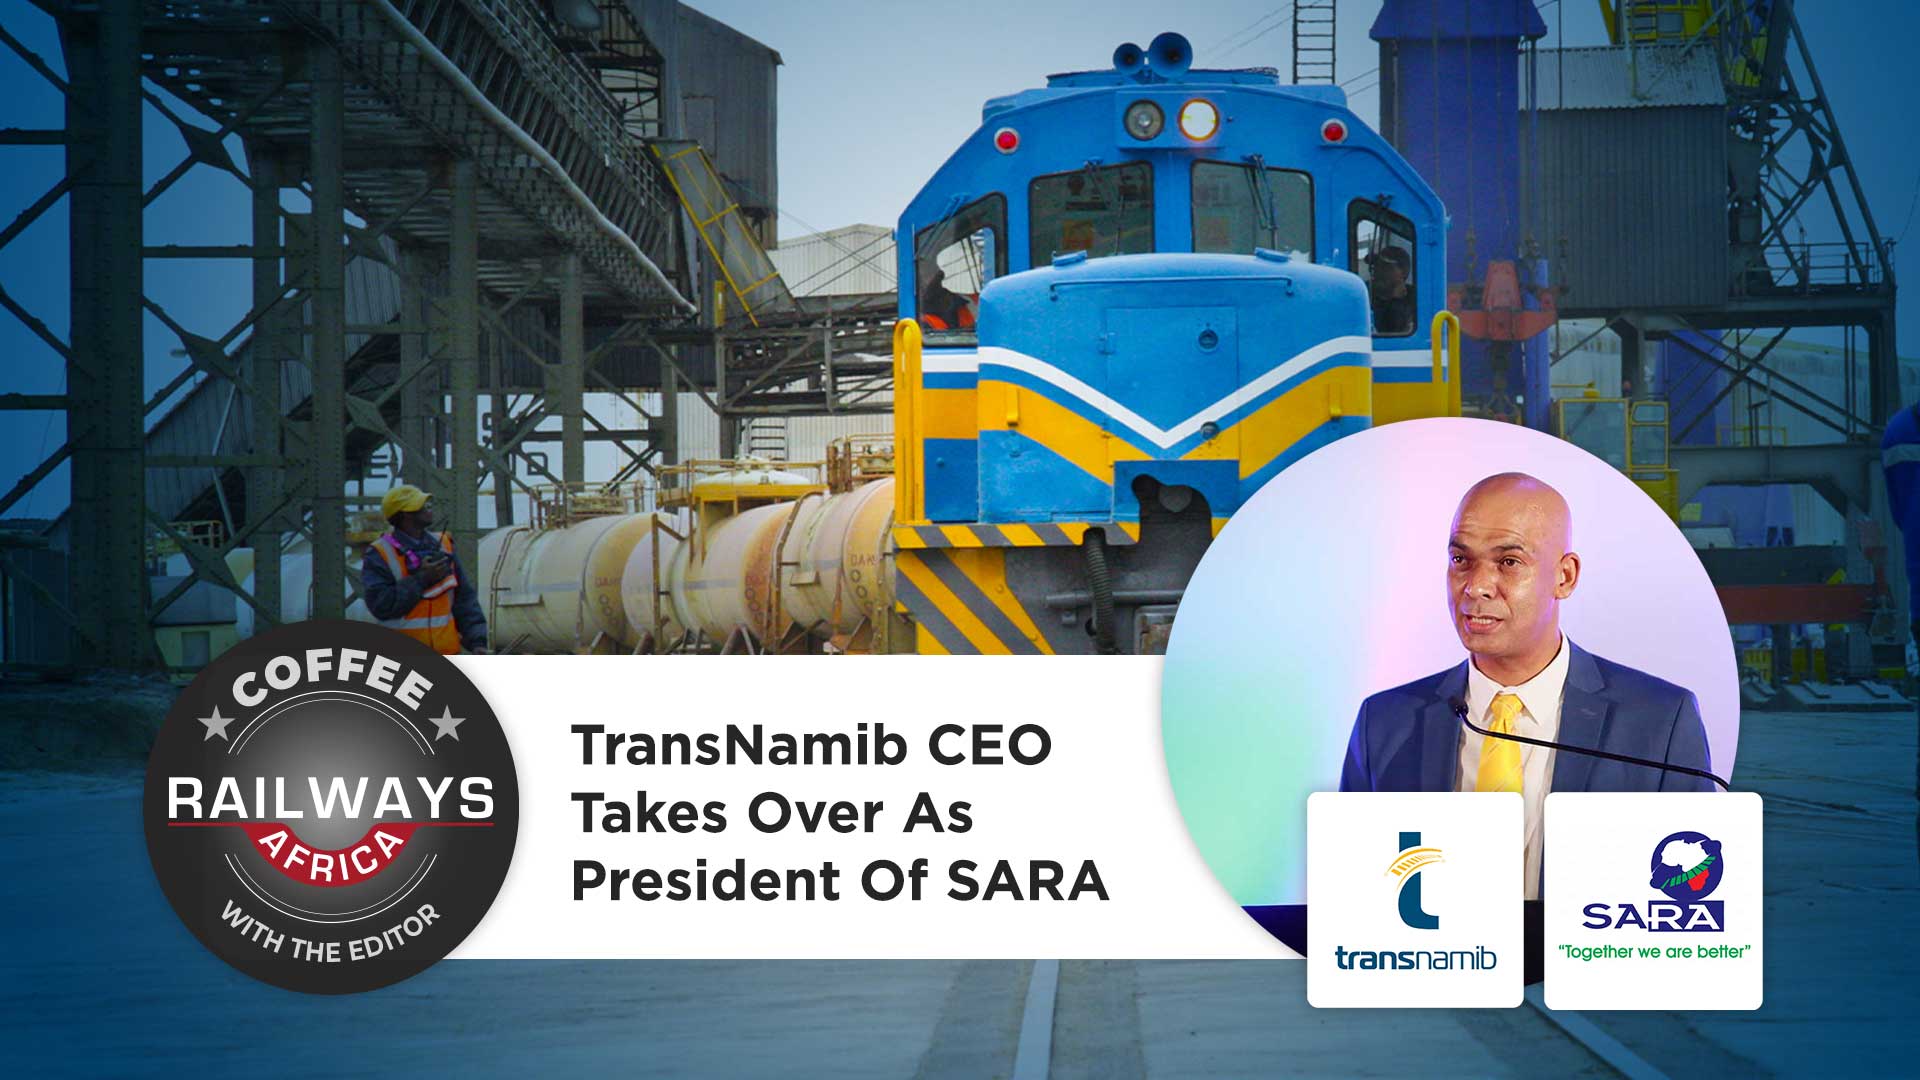 TransNamib CEO Takes Over As President Of SARA